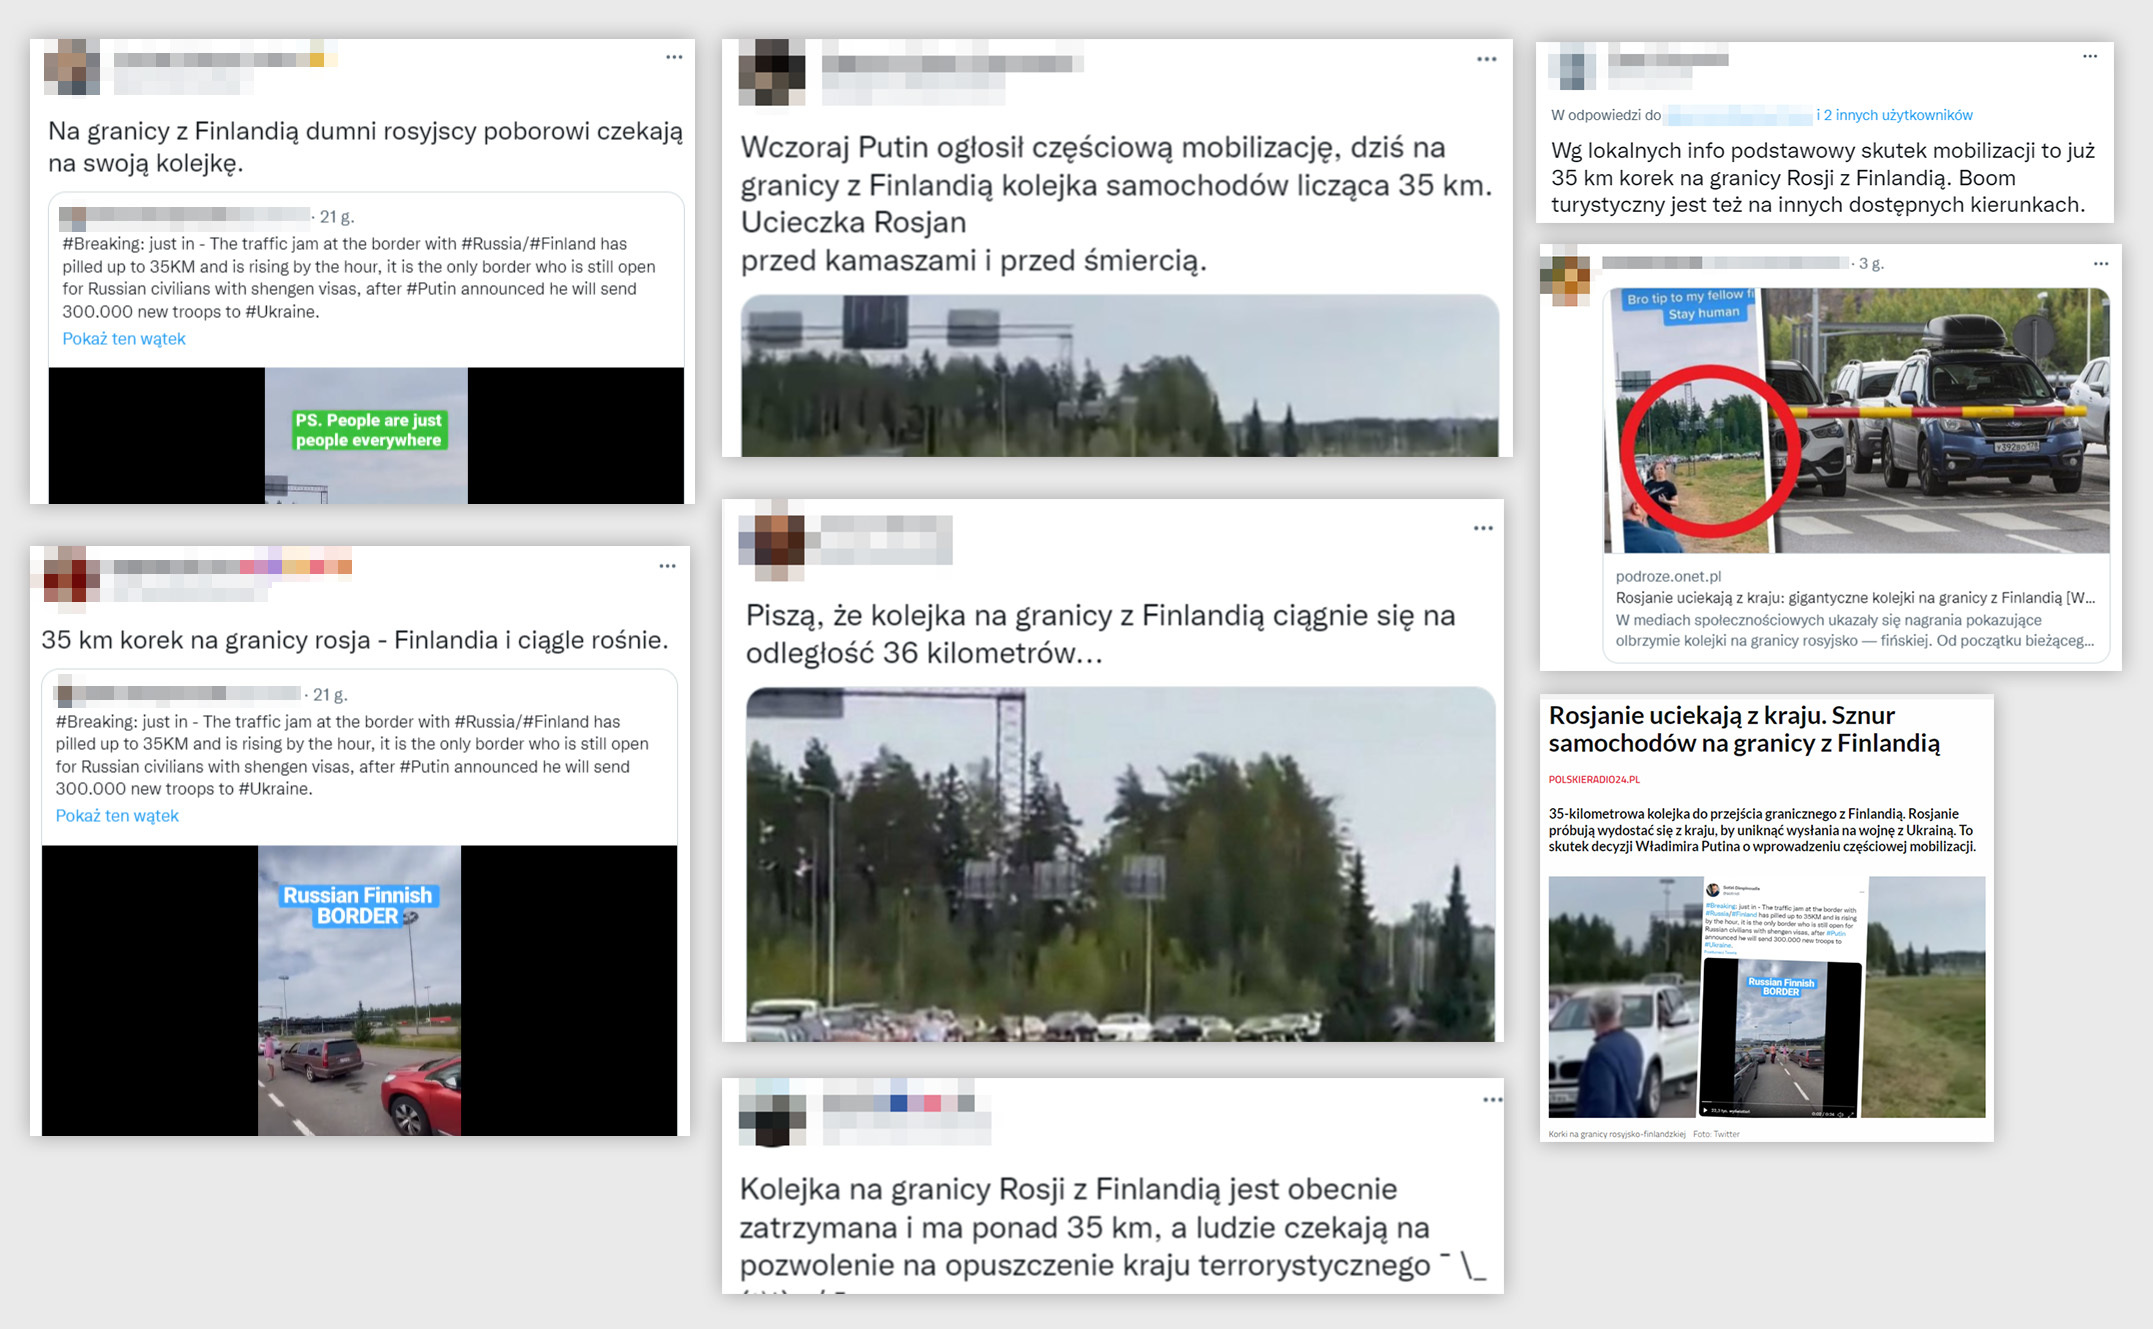 Fałszywy przekaz o tym, że film pokazuje sytuację na granicy rosyjsko-fińskiej po ogłoszeniu mobilizacji, rozchodził się 21 września szeroko w polskiej sieci  